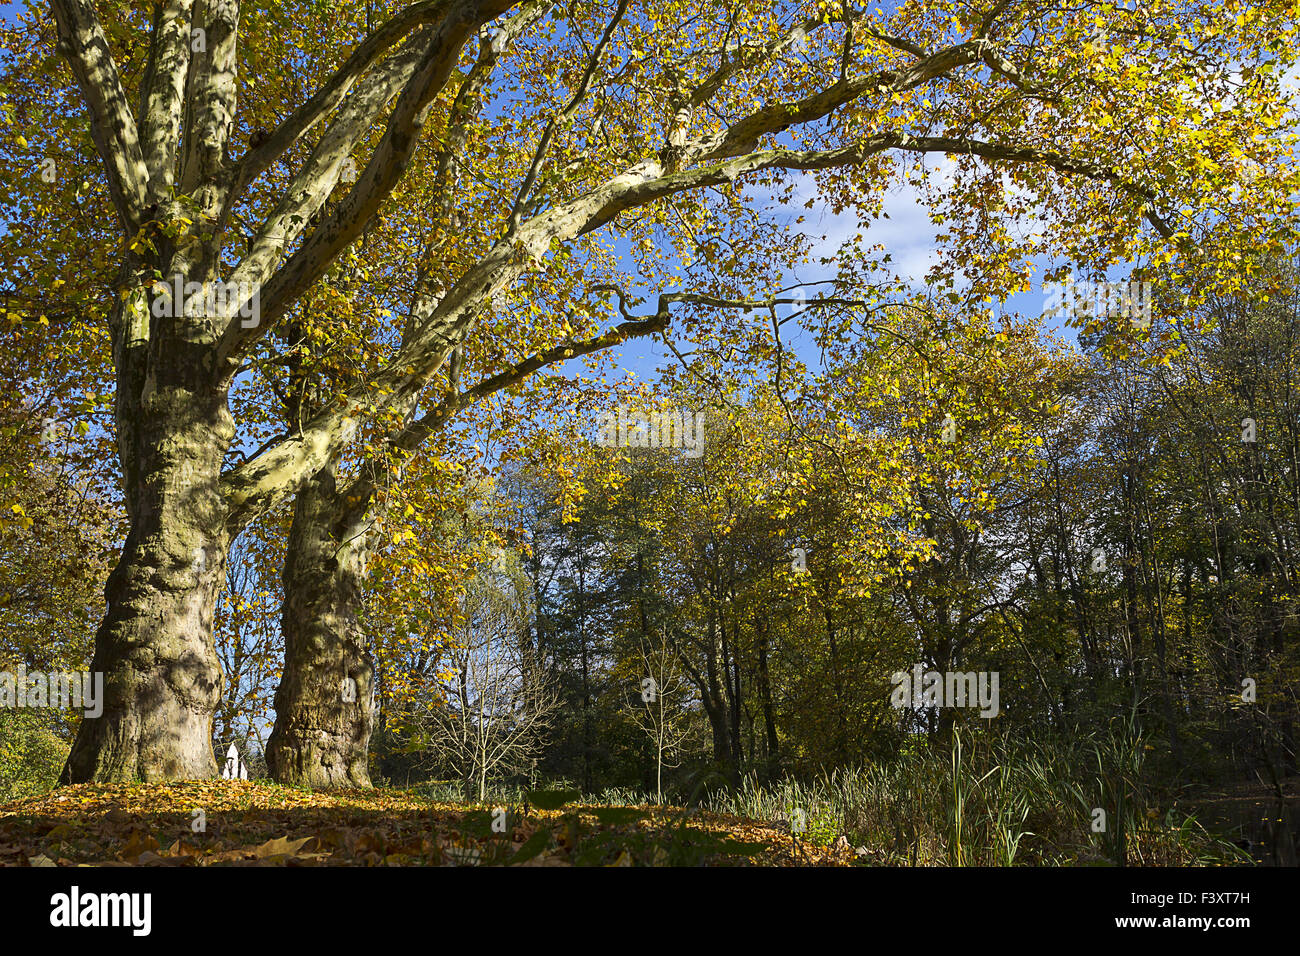 old tree in autumn Stock Photo